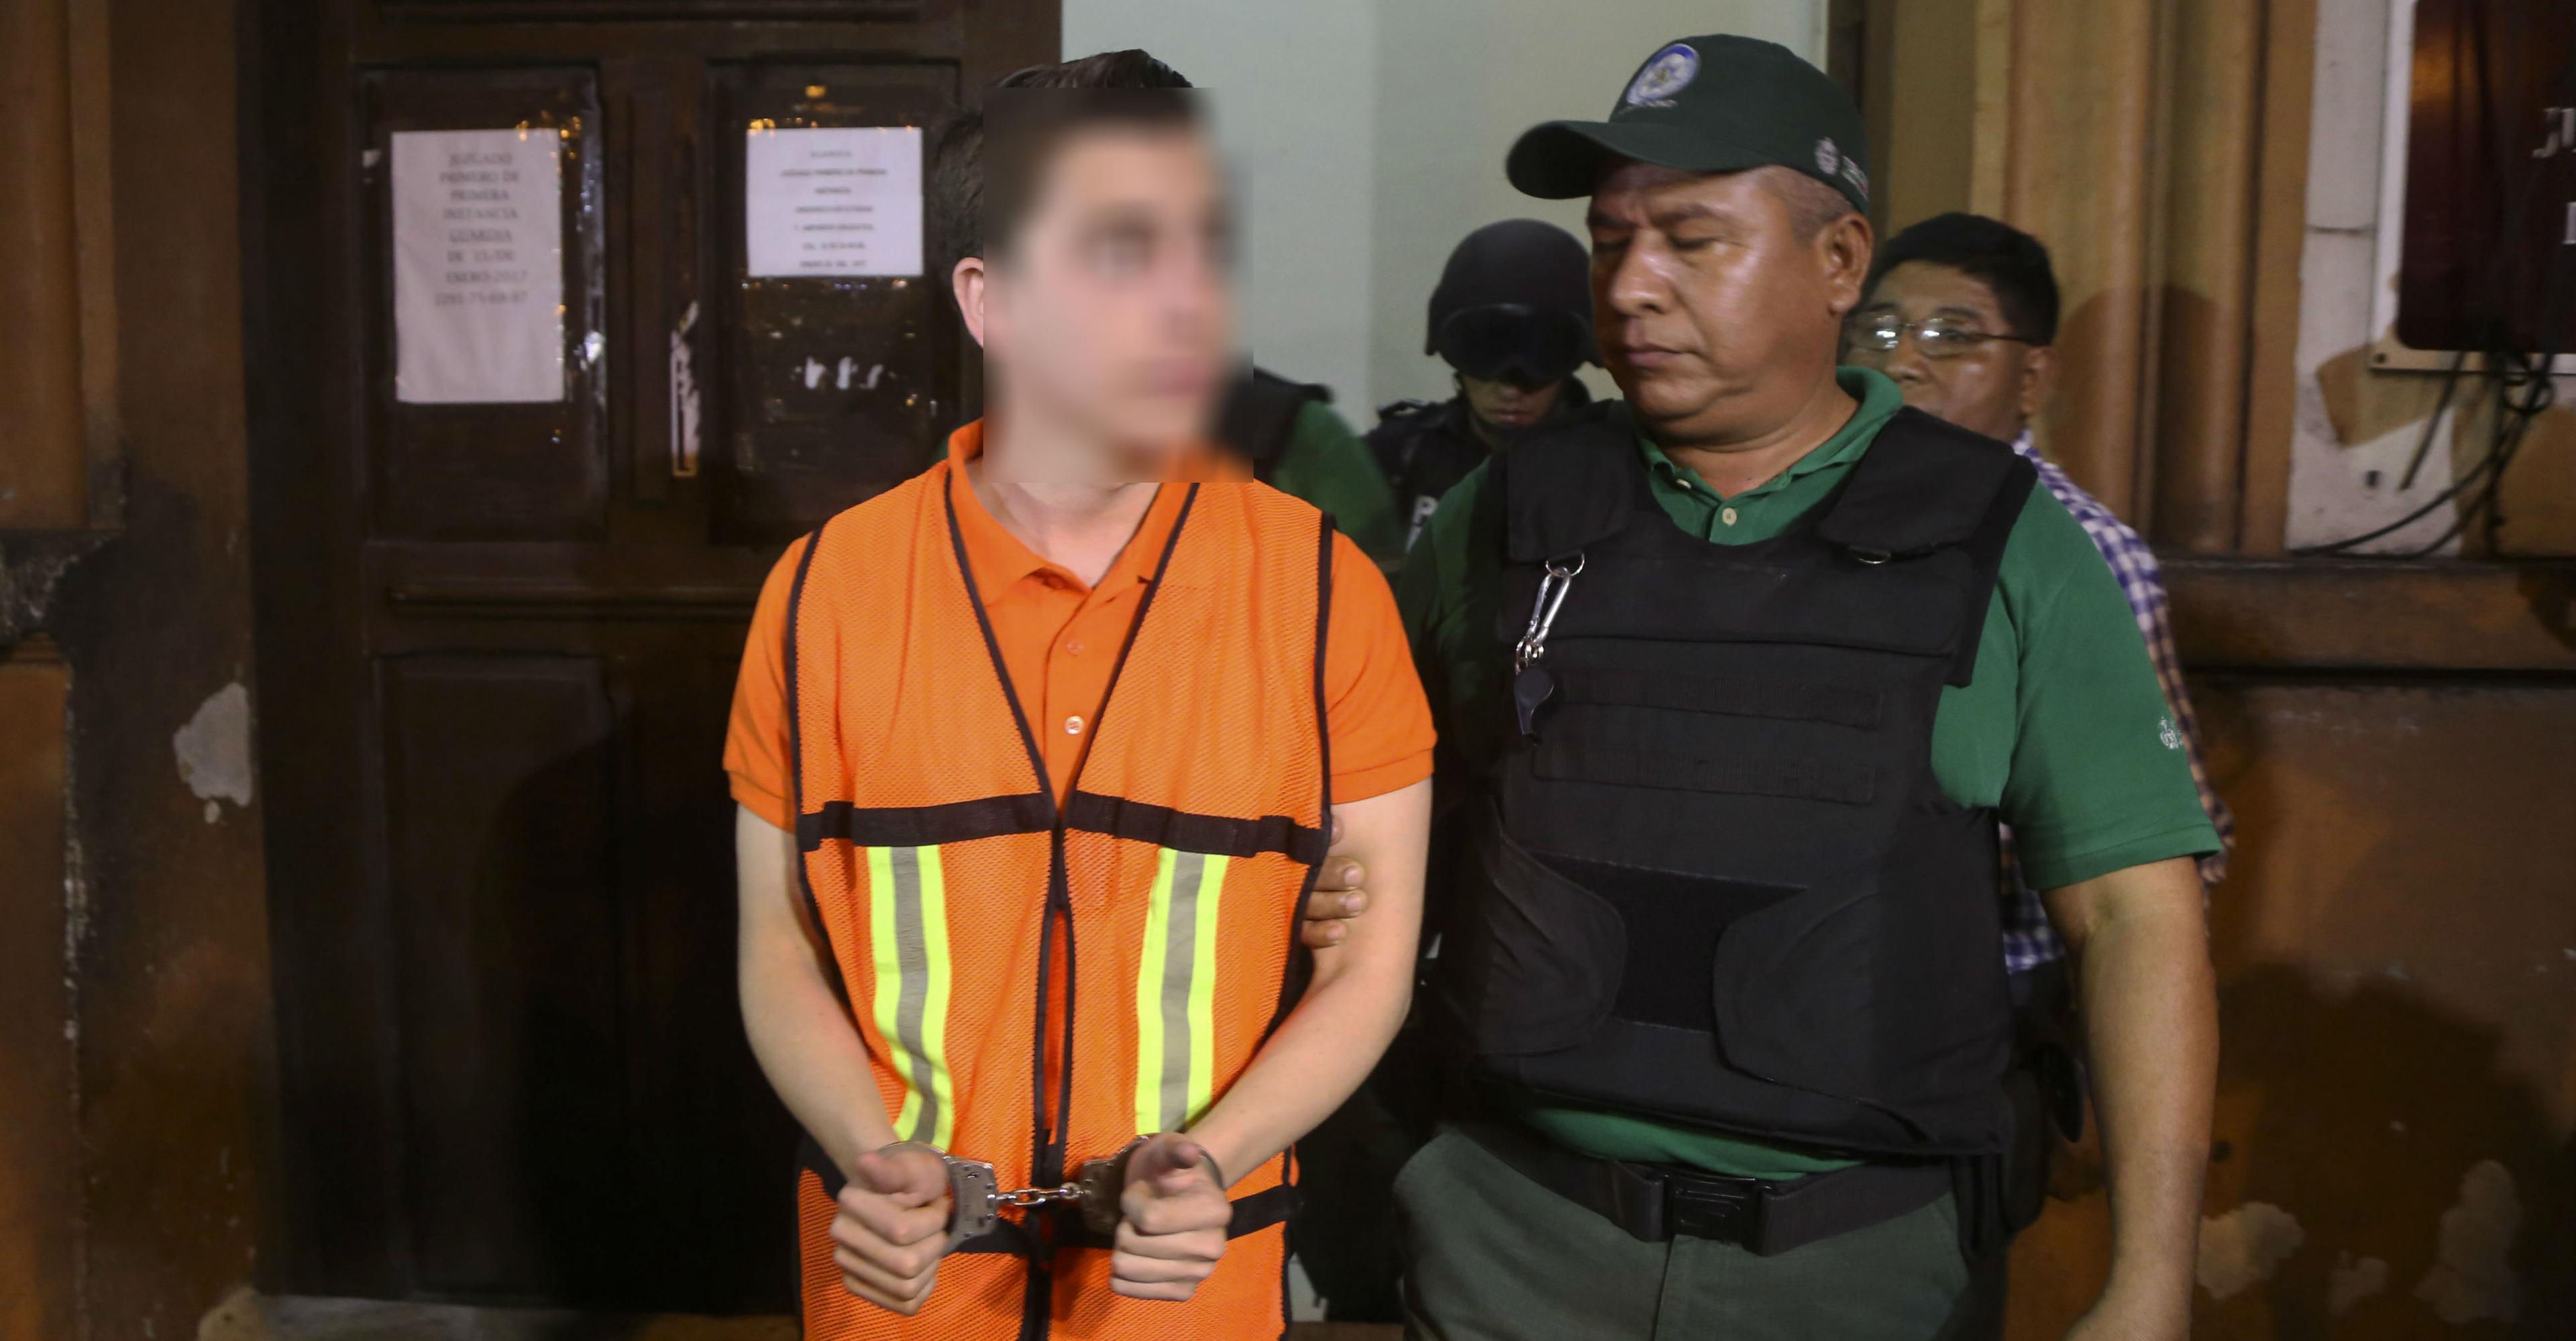 Juez da amparo a Diego Cruz, acusado de pederestia, porque no tuvo intención de copular